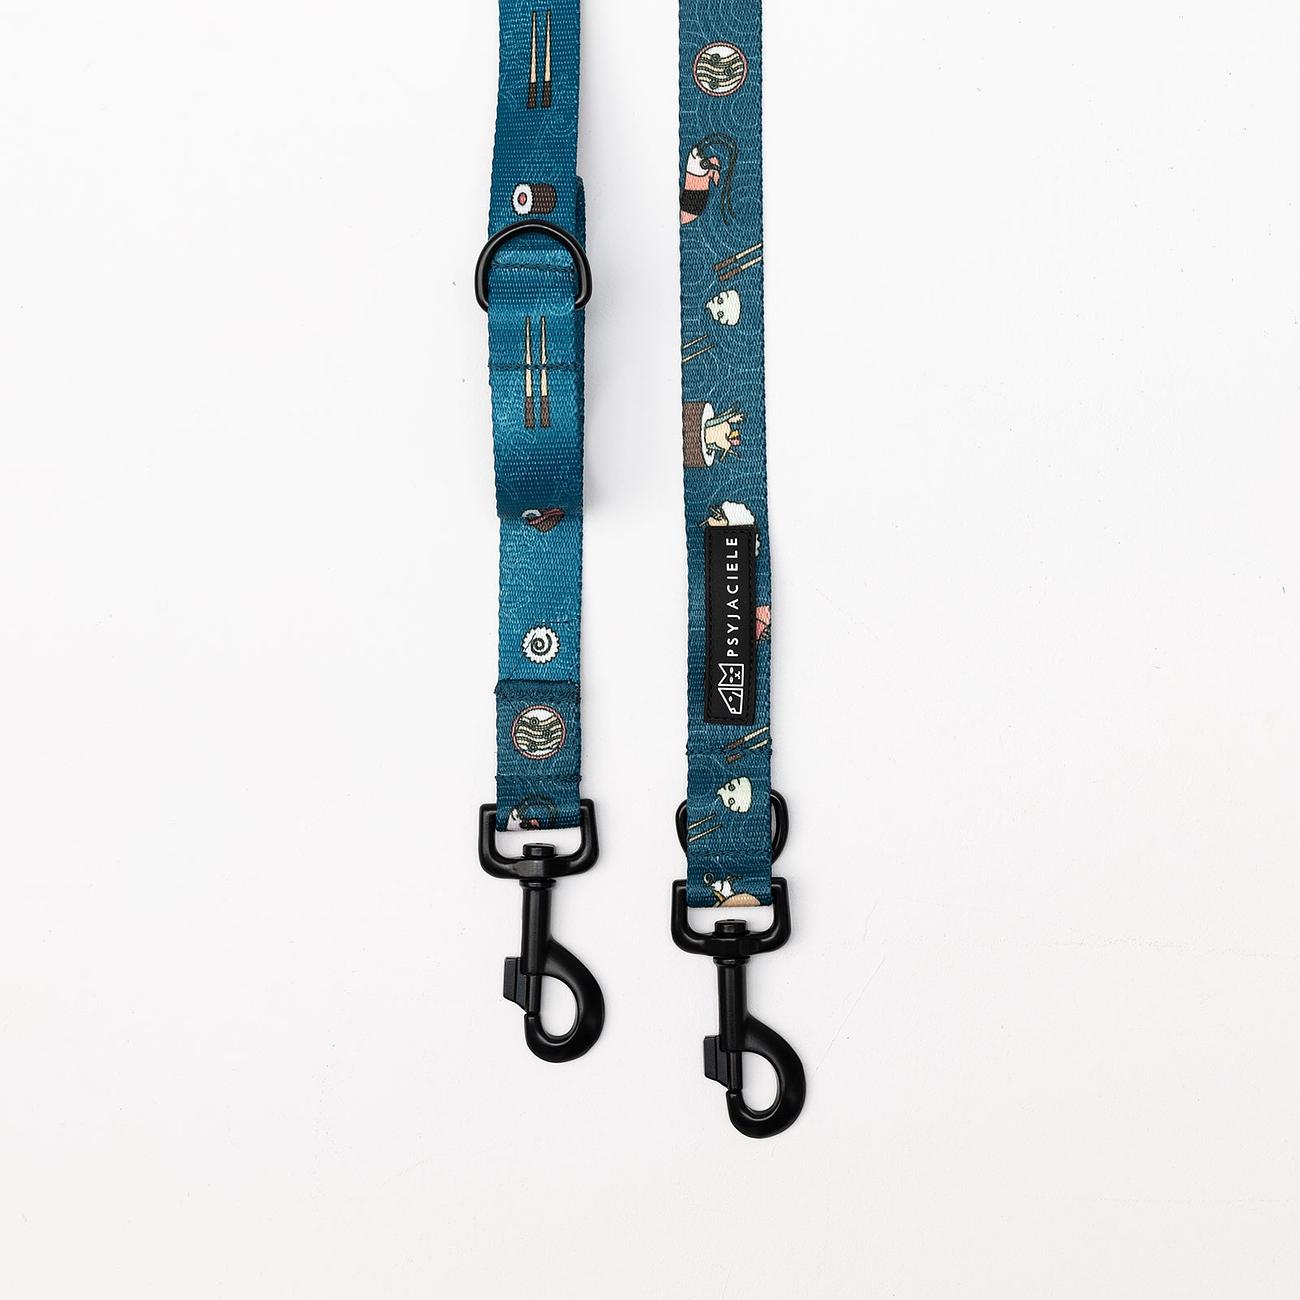 Adjustable leash "Doggomaki" 